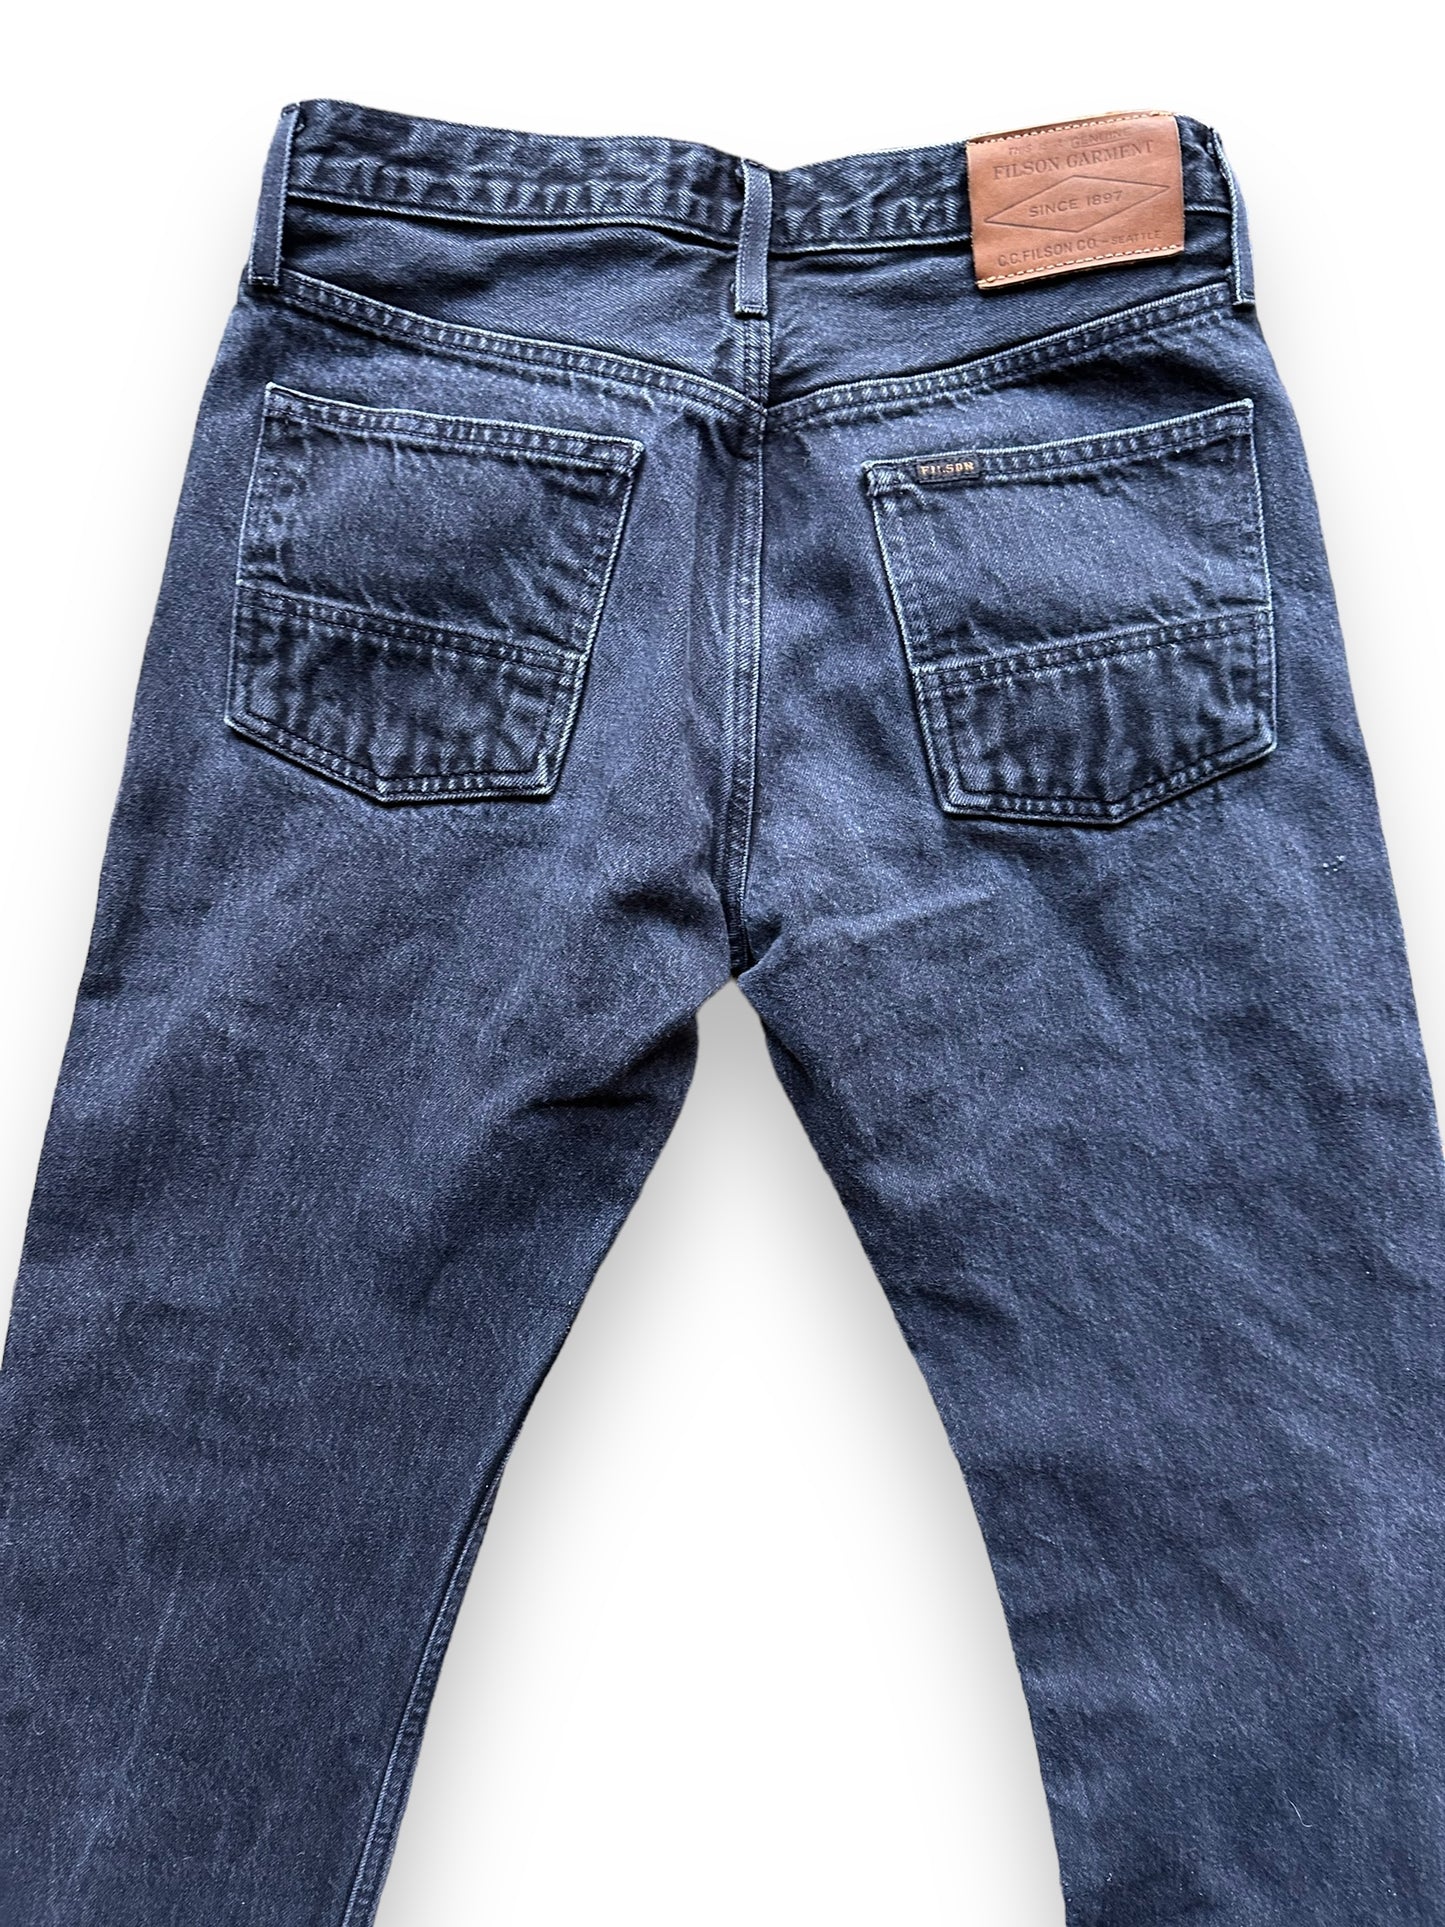 Upper Rear View of Black Filson Jeans W31 |  Filson Dungarees | Filson Workwear Seattle